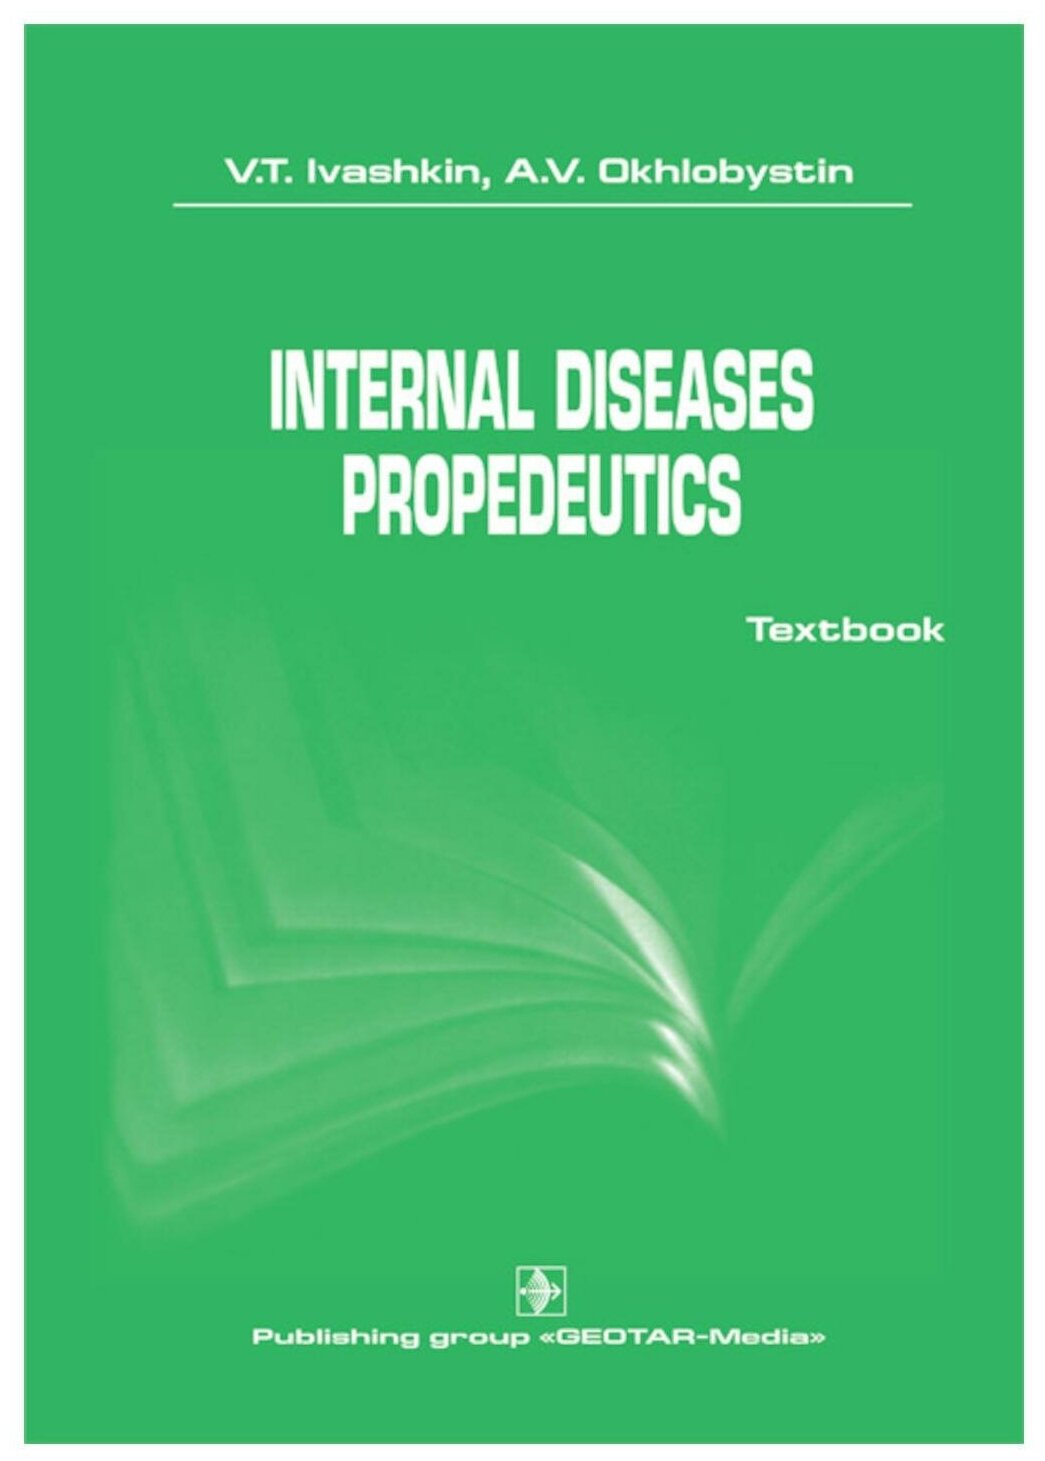 Internal diseases propedeutics: на английском языке. Ивашкин В. Т, Охлобыстин А. В. гэотар-медиа